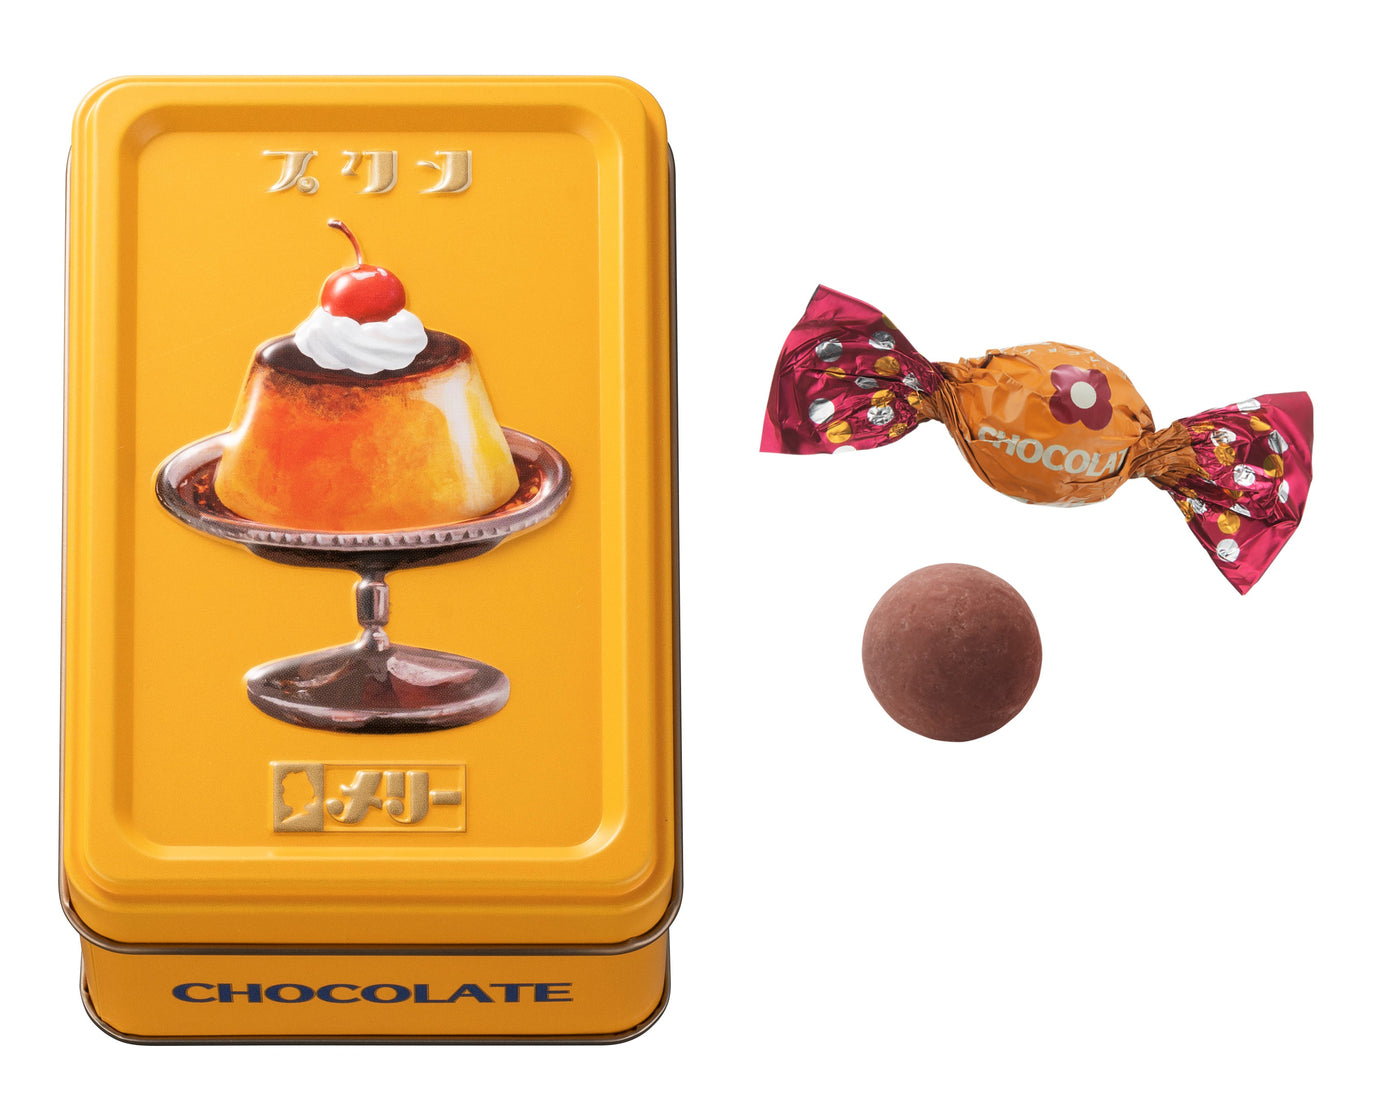 【テスト用】メリーチョコレート | はじけるキャンディチョコレート。プリン缶 9個入